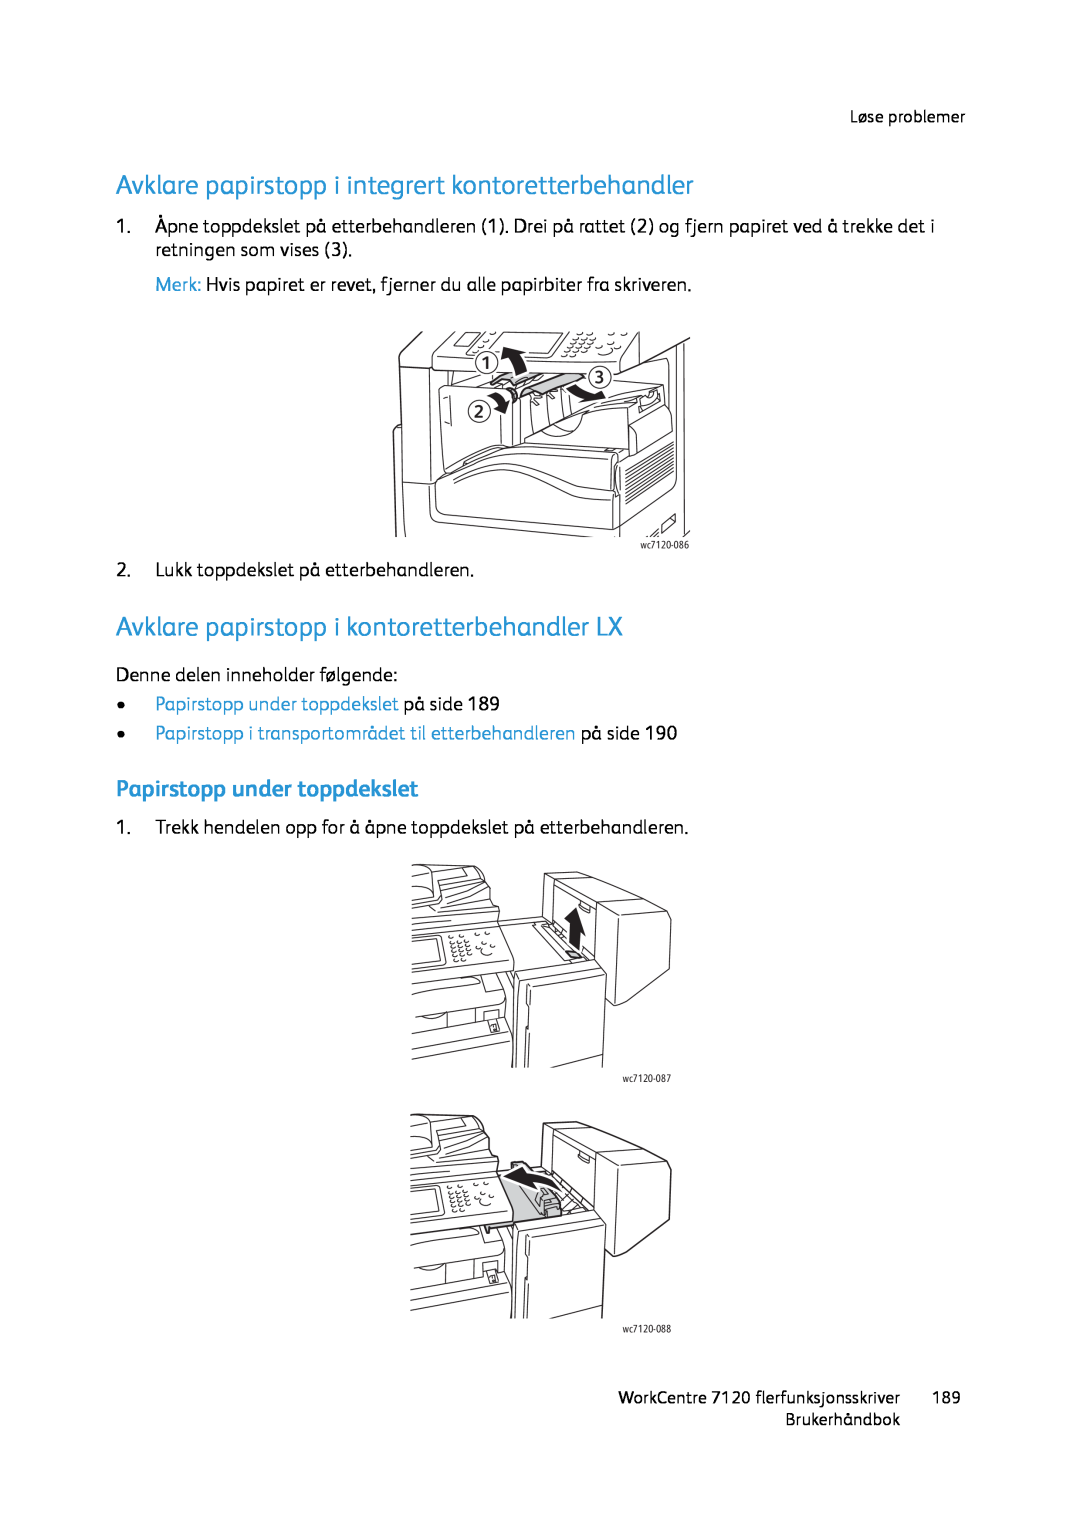 Xerox 7120 manual Avklare papirstopp i integrert kontoretterbehandler, Avklare papirstopp i kontoretterbehandler LX 